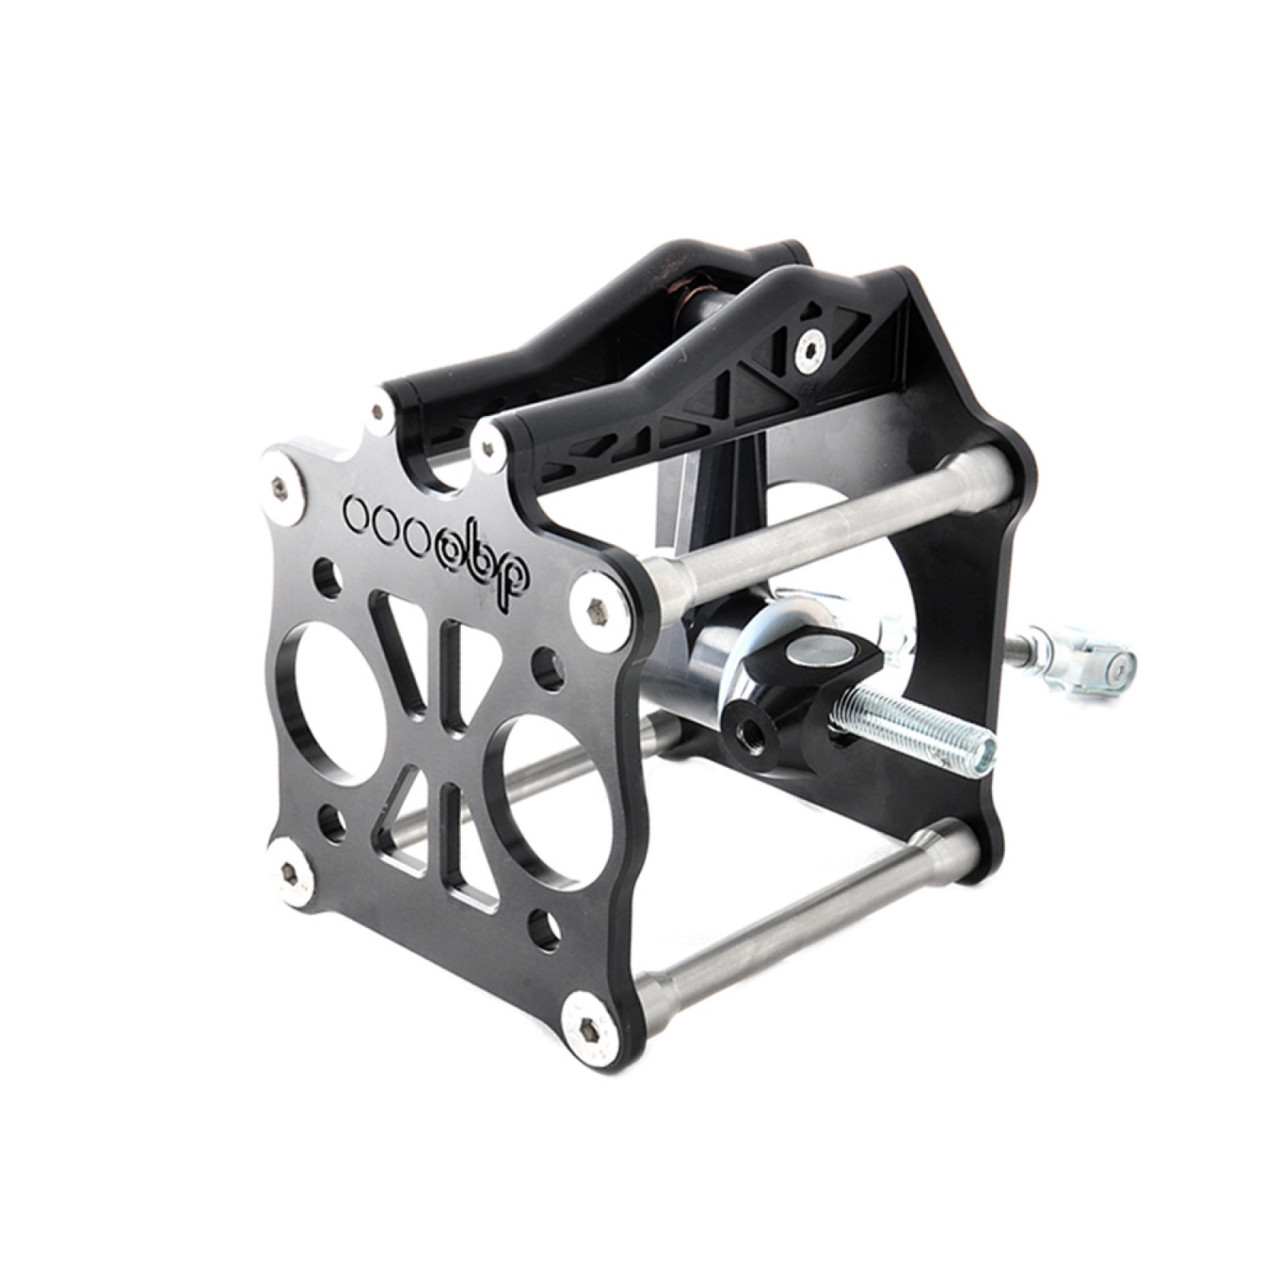 obp Motorsport Performance V2 Universal Fitment Servo Replacement System (OBP-USR-01)